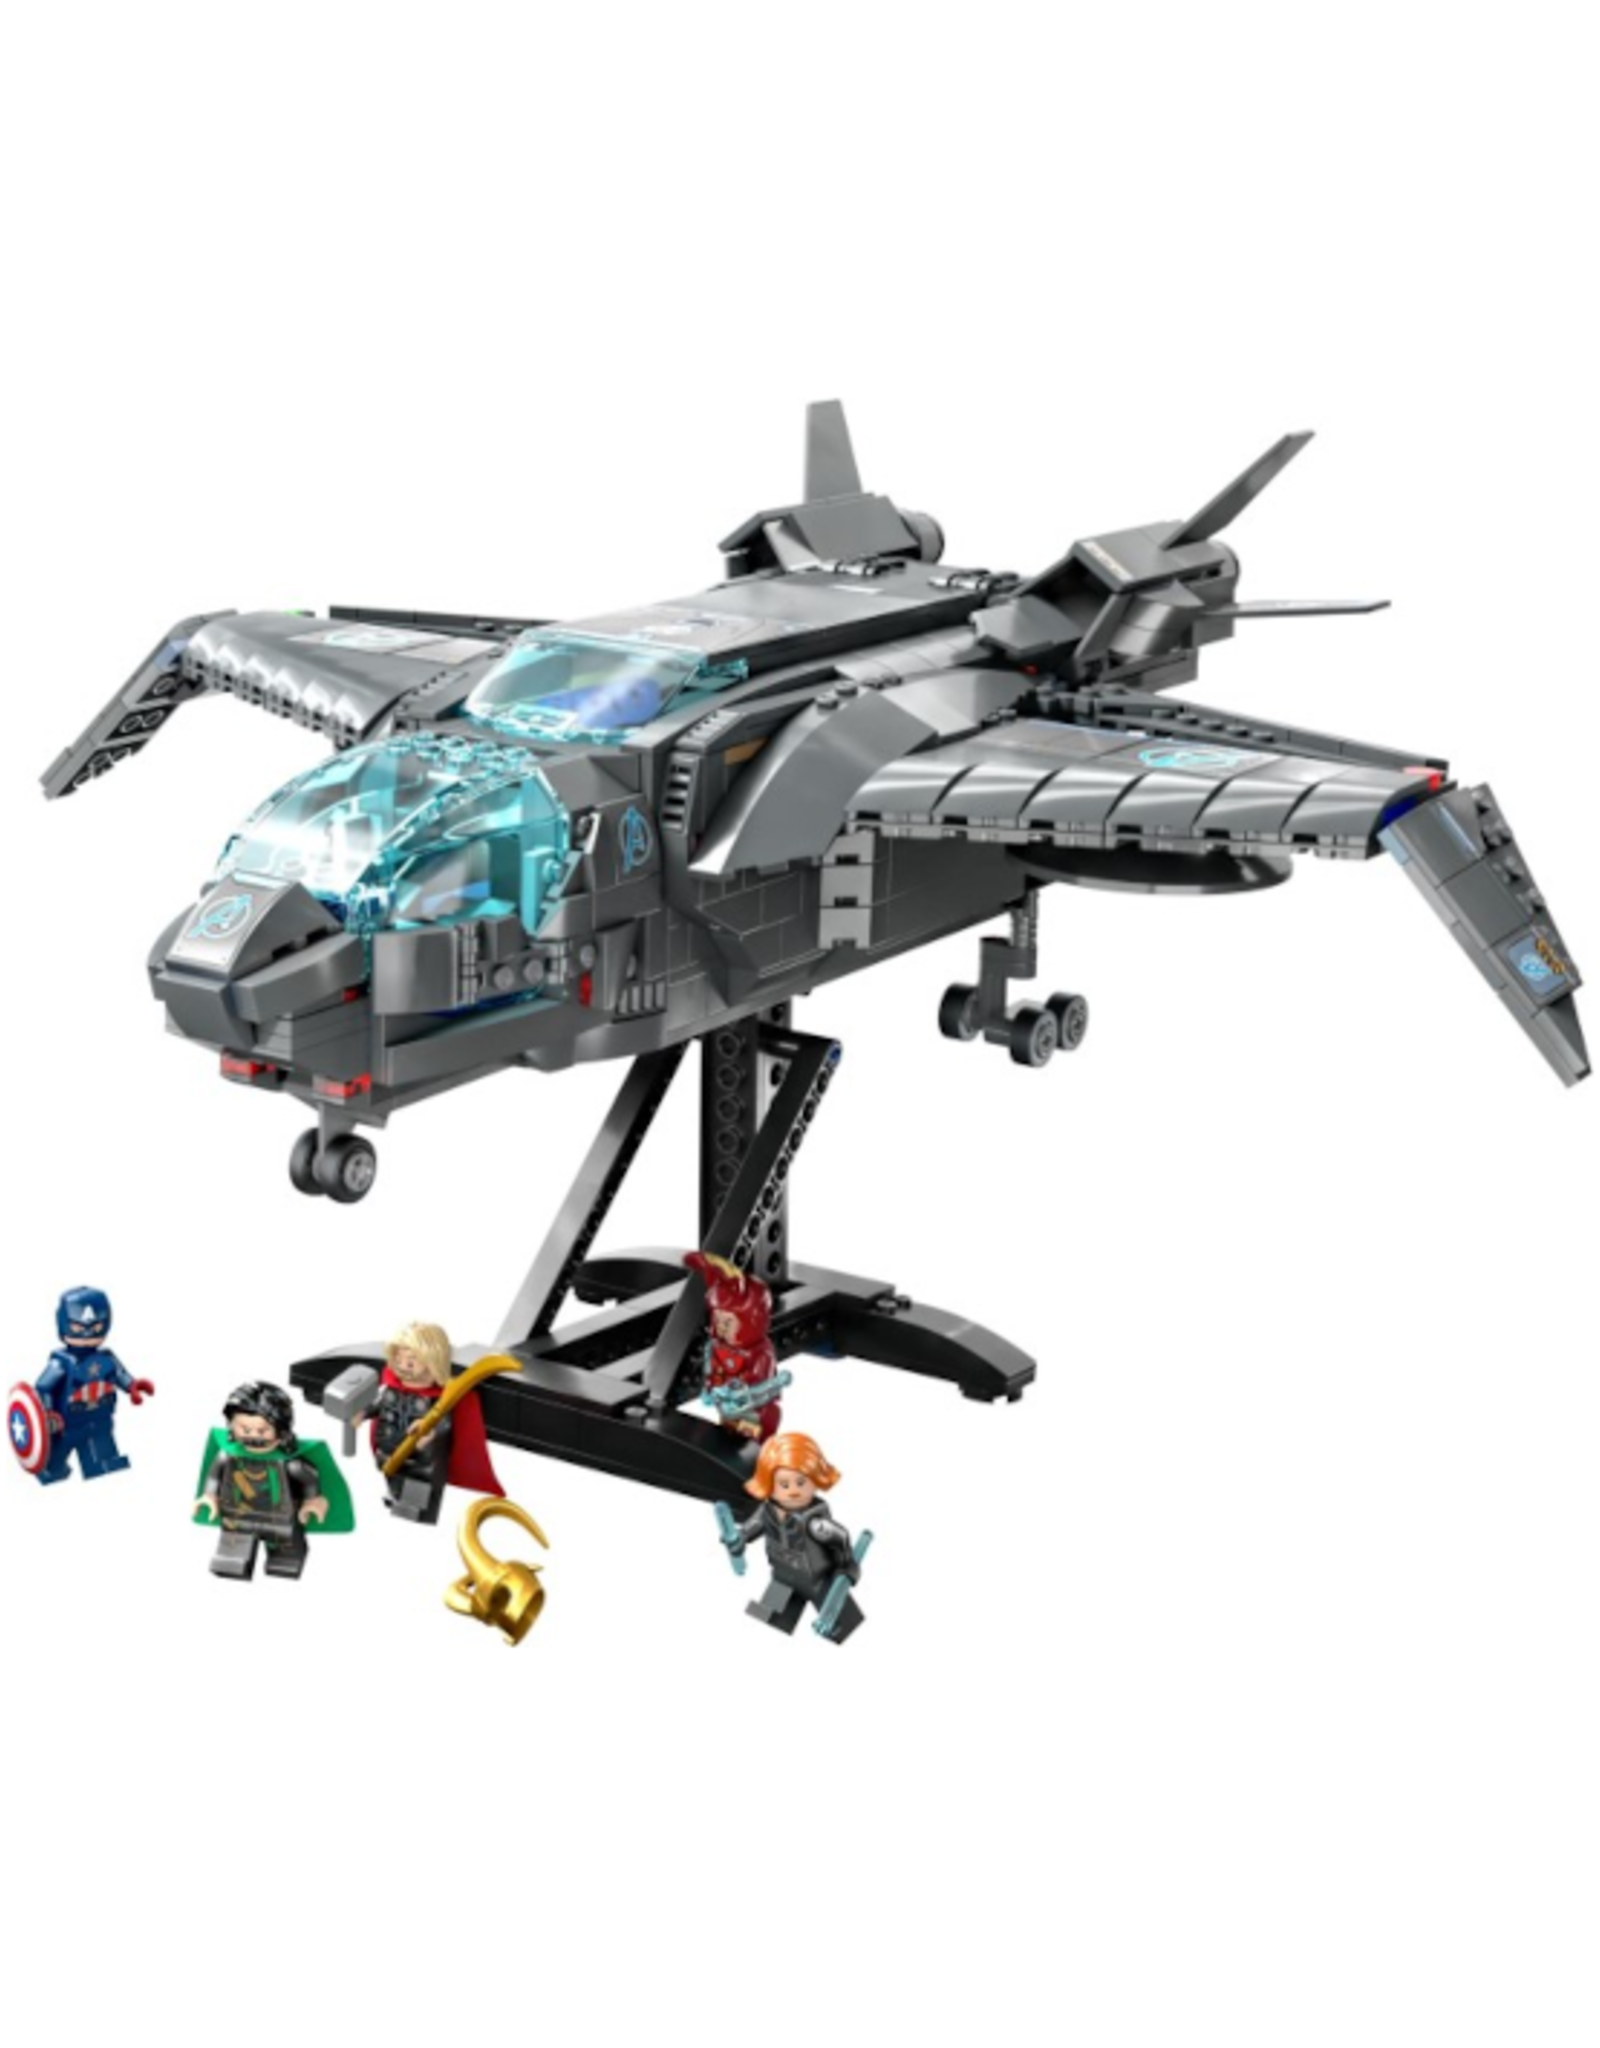 Lego Lego - Marvel - 76248 - The Avengers Quinjet